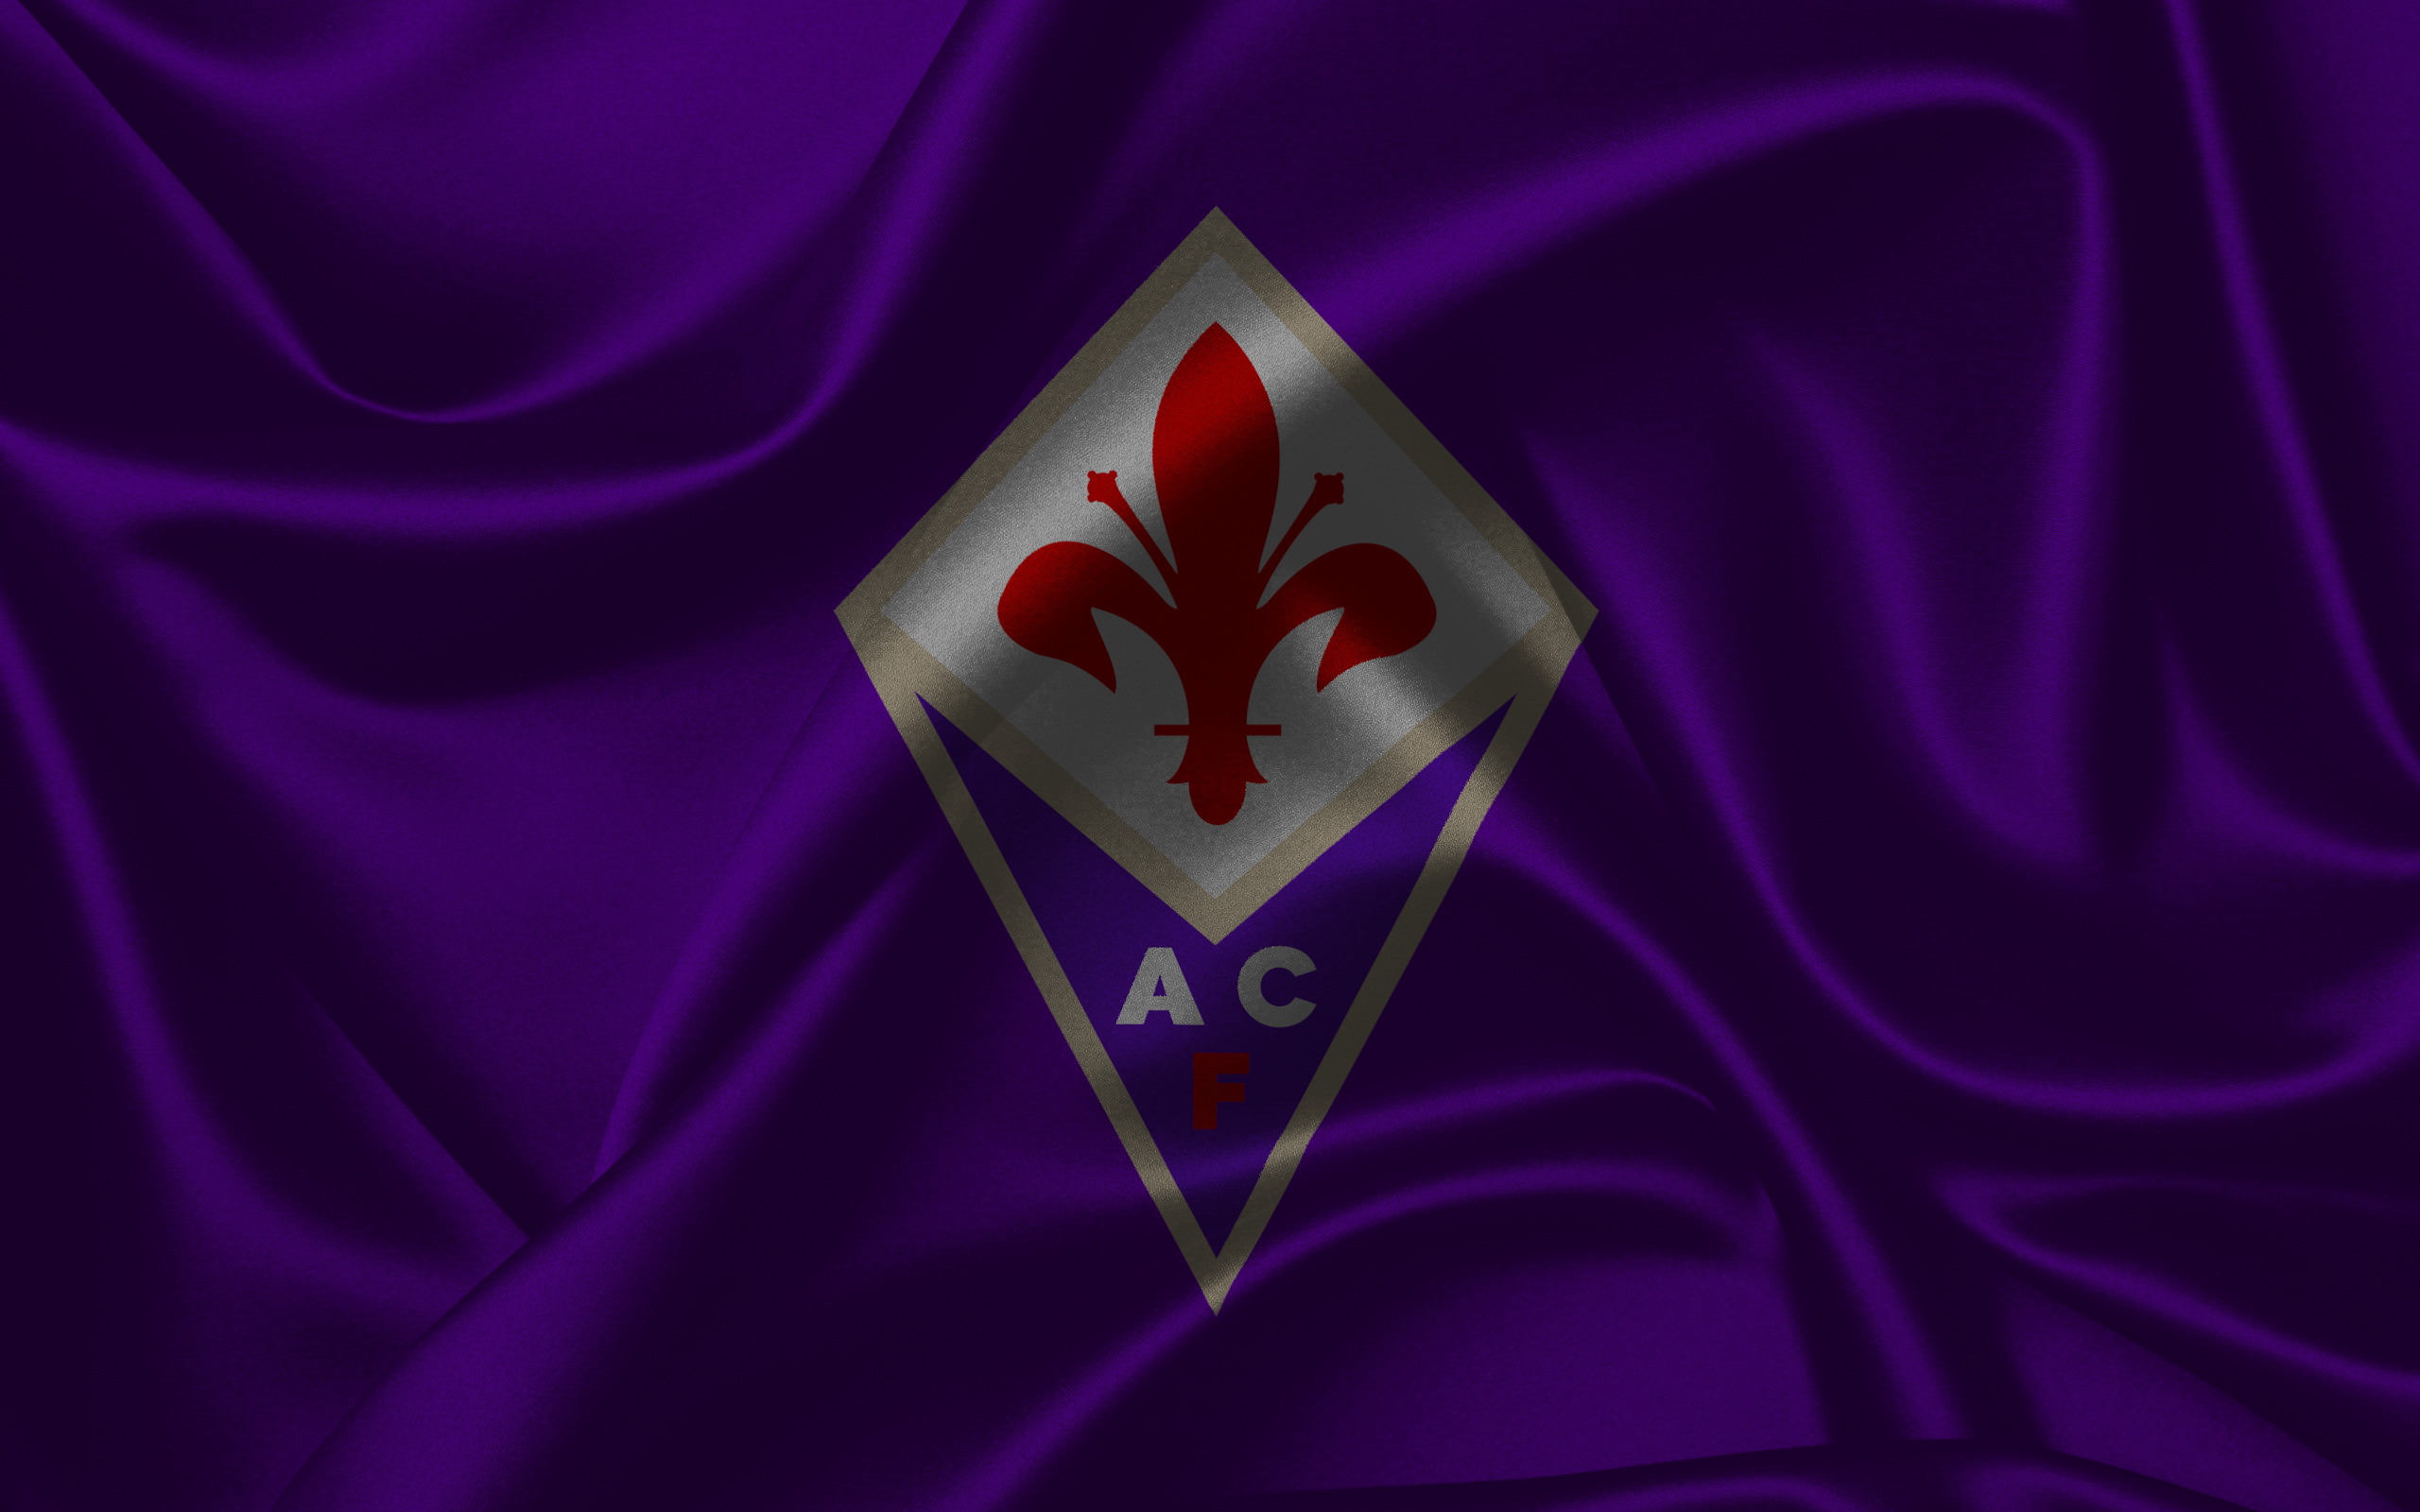 Melhores papéis de parede de Acf Fiorentina para tela do telefone